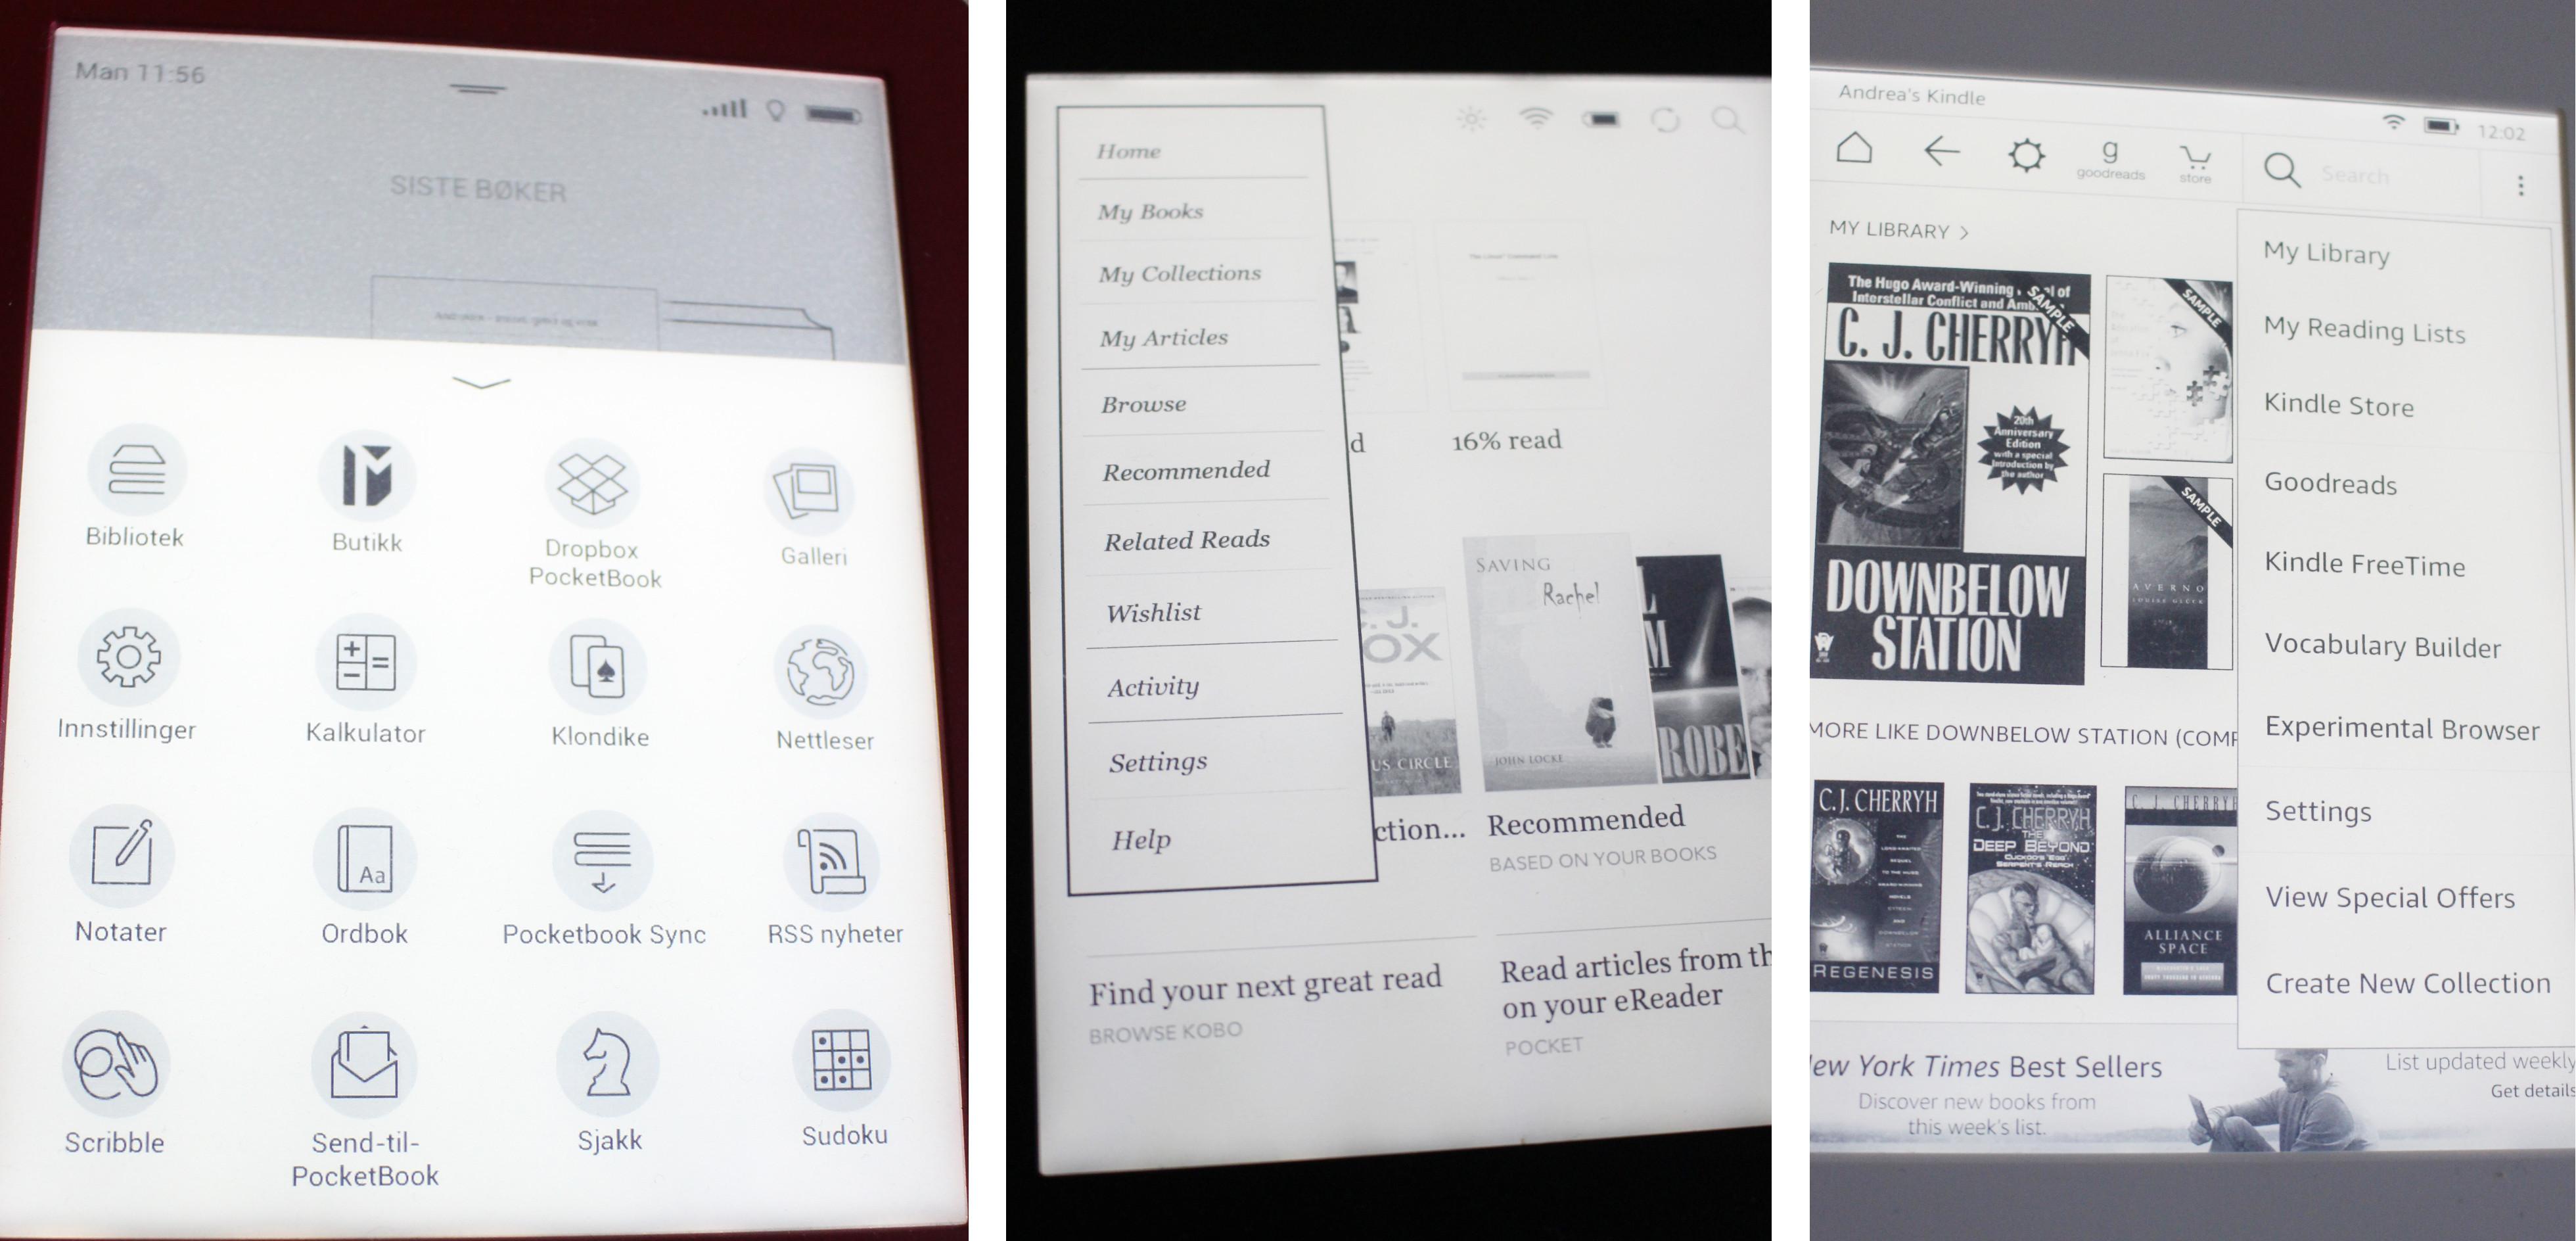 Lesebrettene har litt forskjellige menyer. PocketBook (til venstre) skiller seg fra Kobo (midten) og Paperwhite (høyre) som den mest oversiktelige og lettleste.